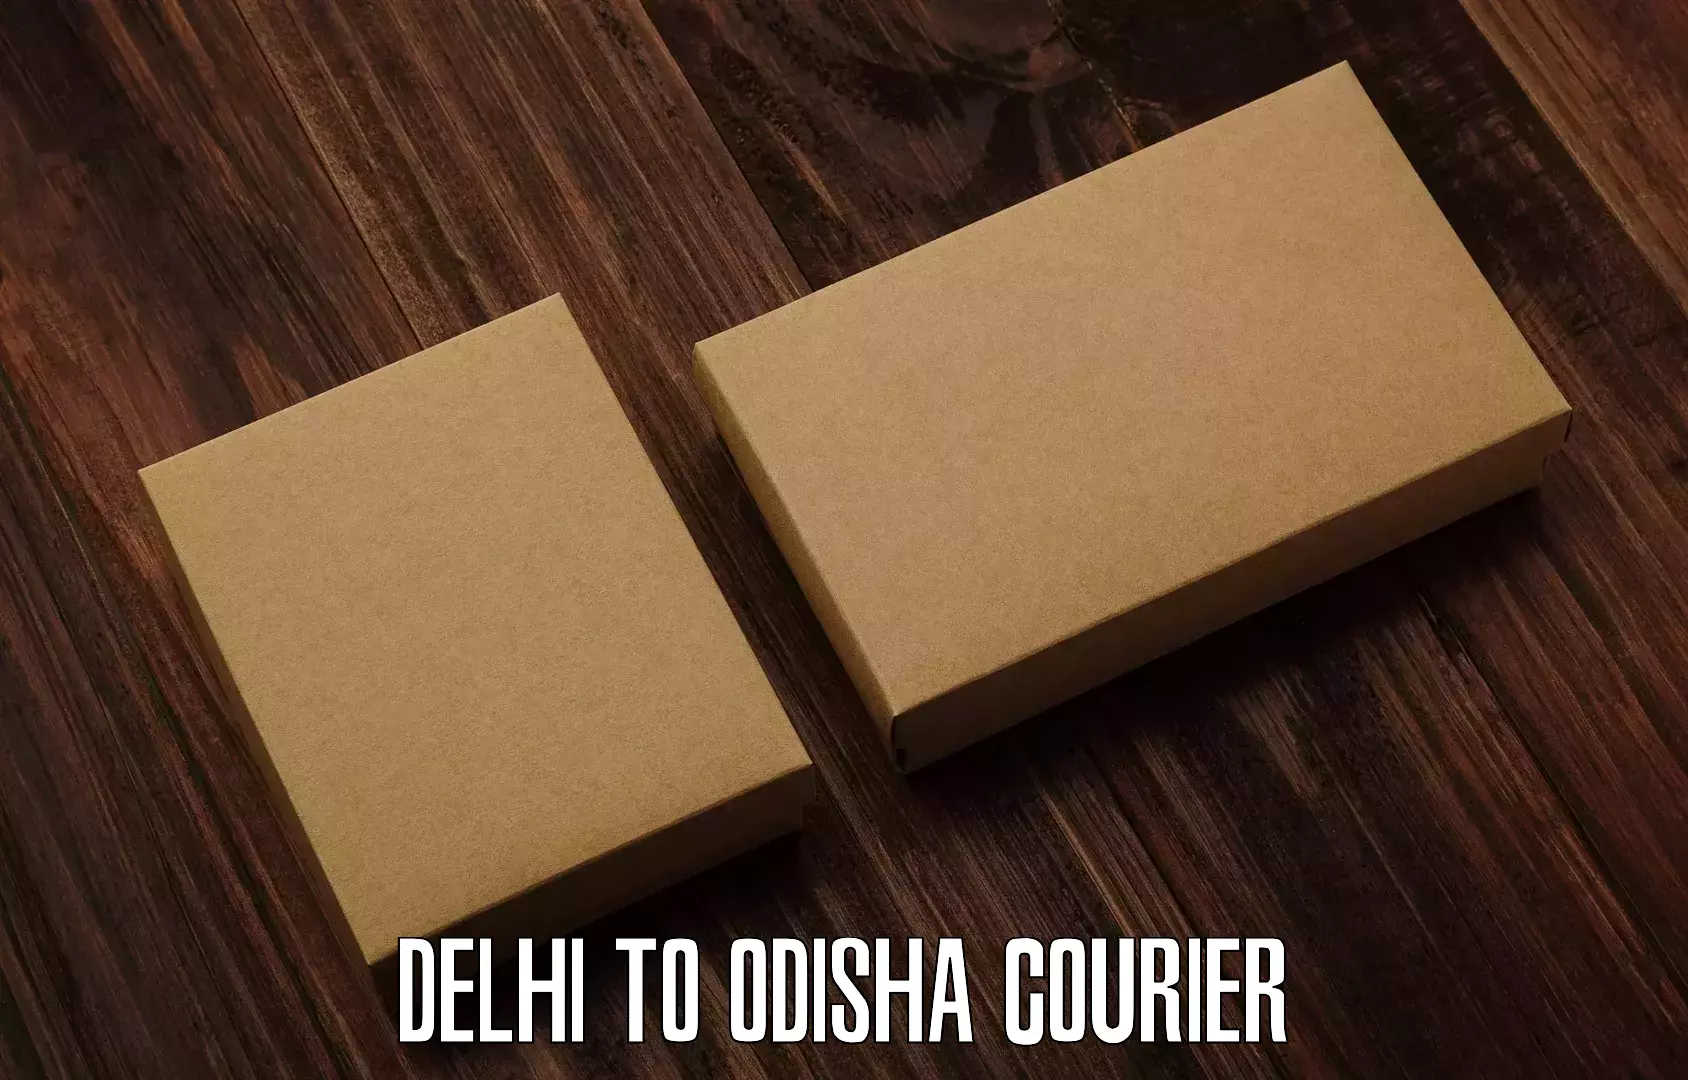 User-friendly delivery service Delhi to Rayagada